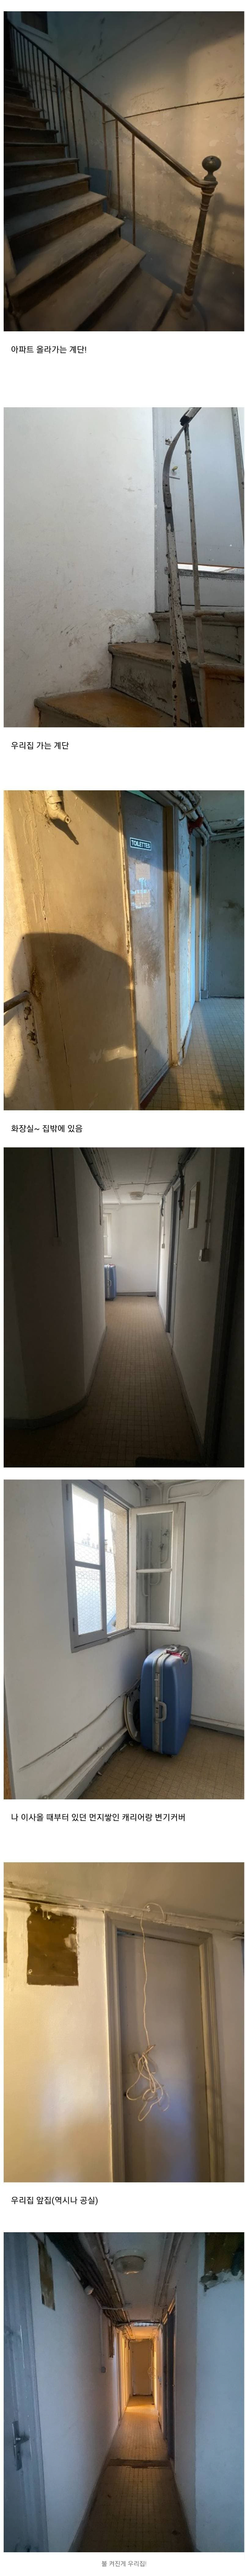 아파트 한 층에 혼자 산다는 사람